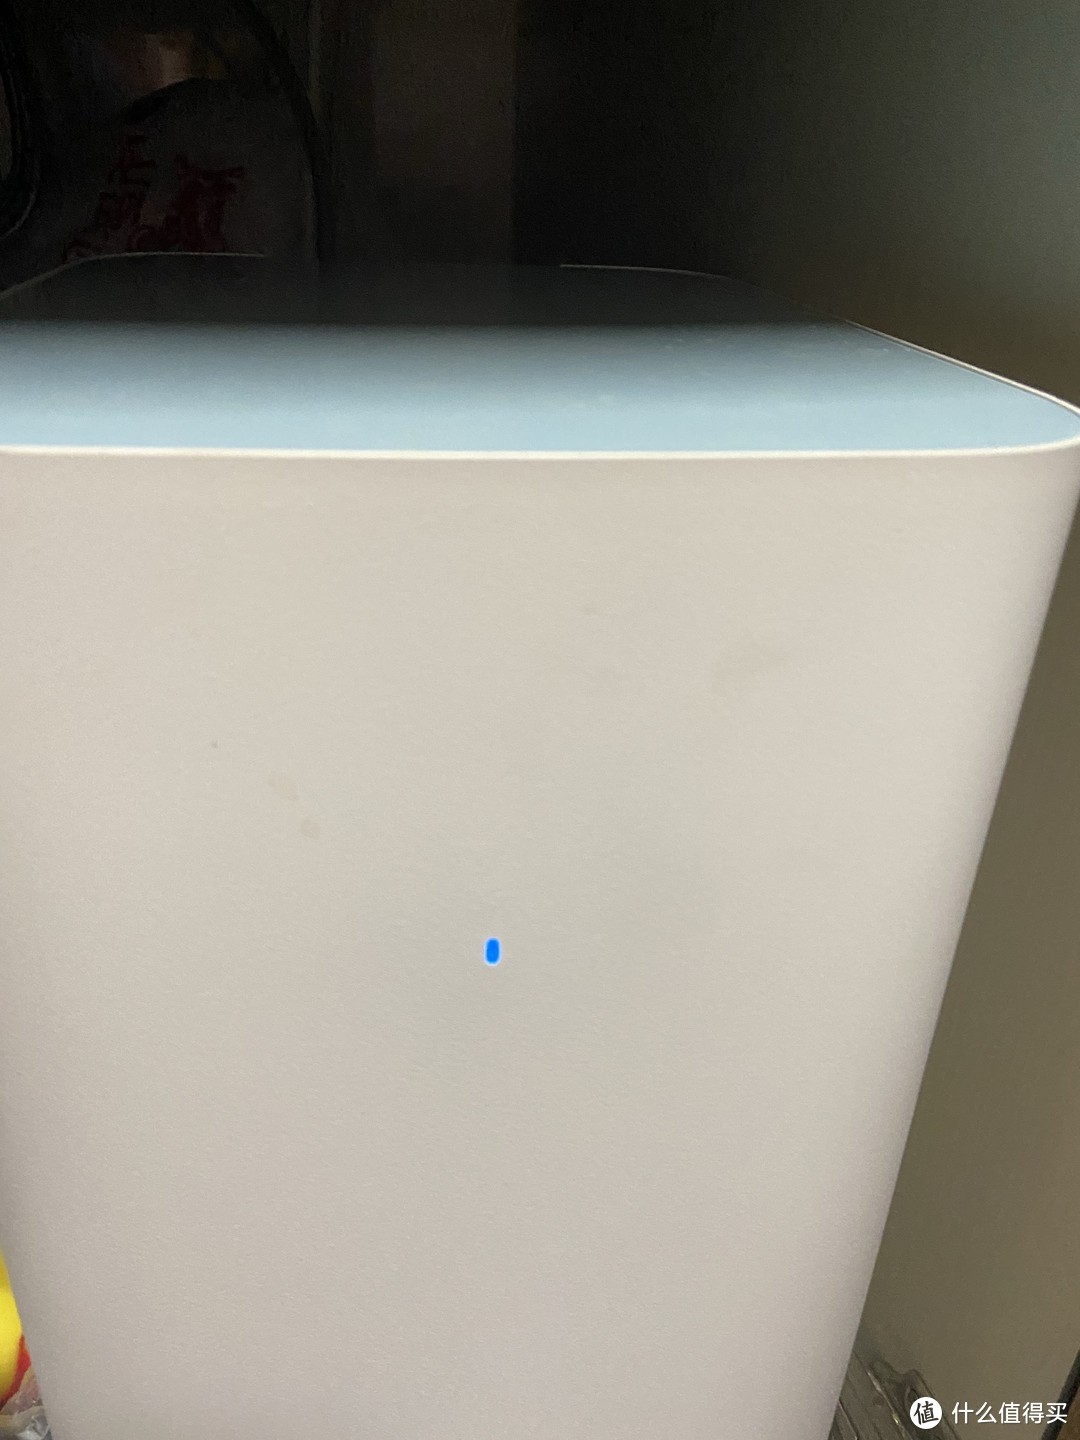 你们家的净水器多久换一次滤芯呢？其实滤芯没那么脏